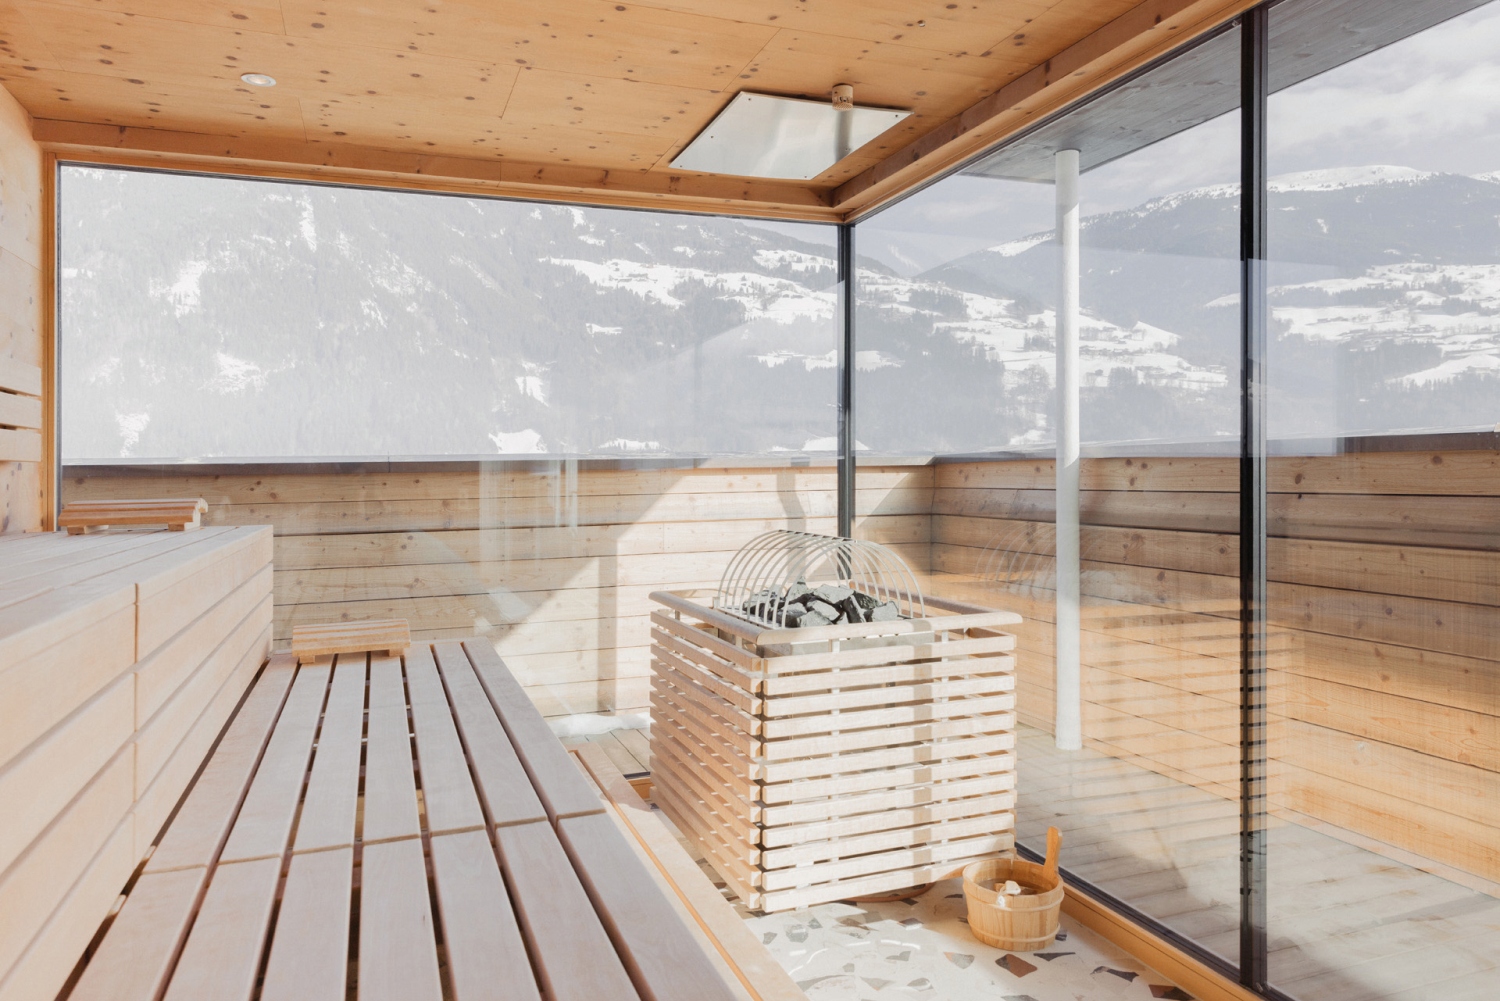 Sauna room looking over snowy mountain scene - Zillertal, Austria